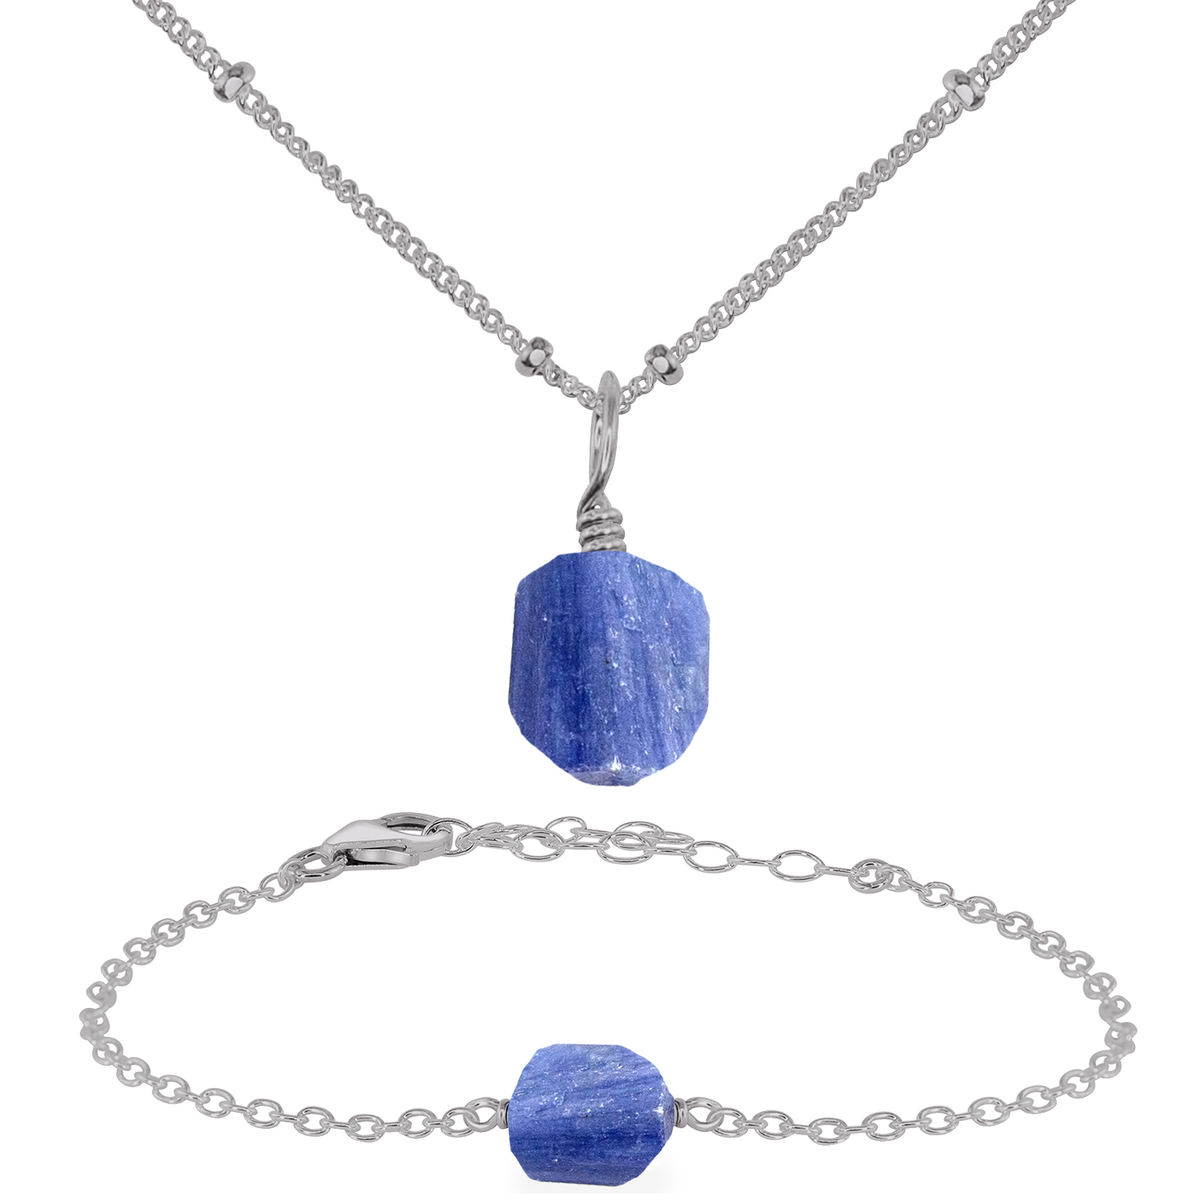 Raw Kyanite Crystal Jewellery Set - Raw Kyanite Crystal Jewellery Set - Stainless Steel / Satellite / Necklace & Bracelet - Luna Tide Handmade Crystal Jewellery